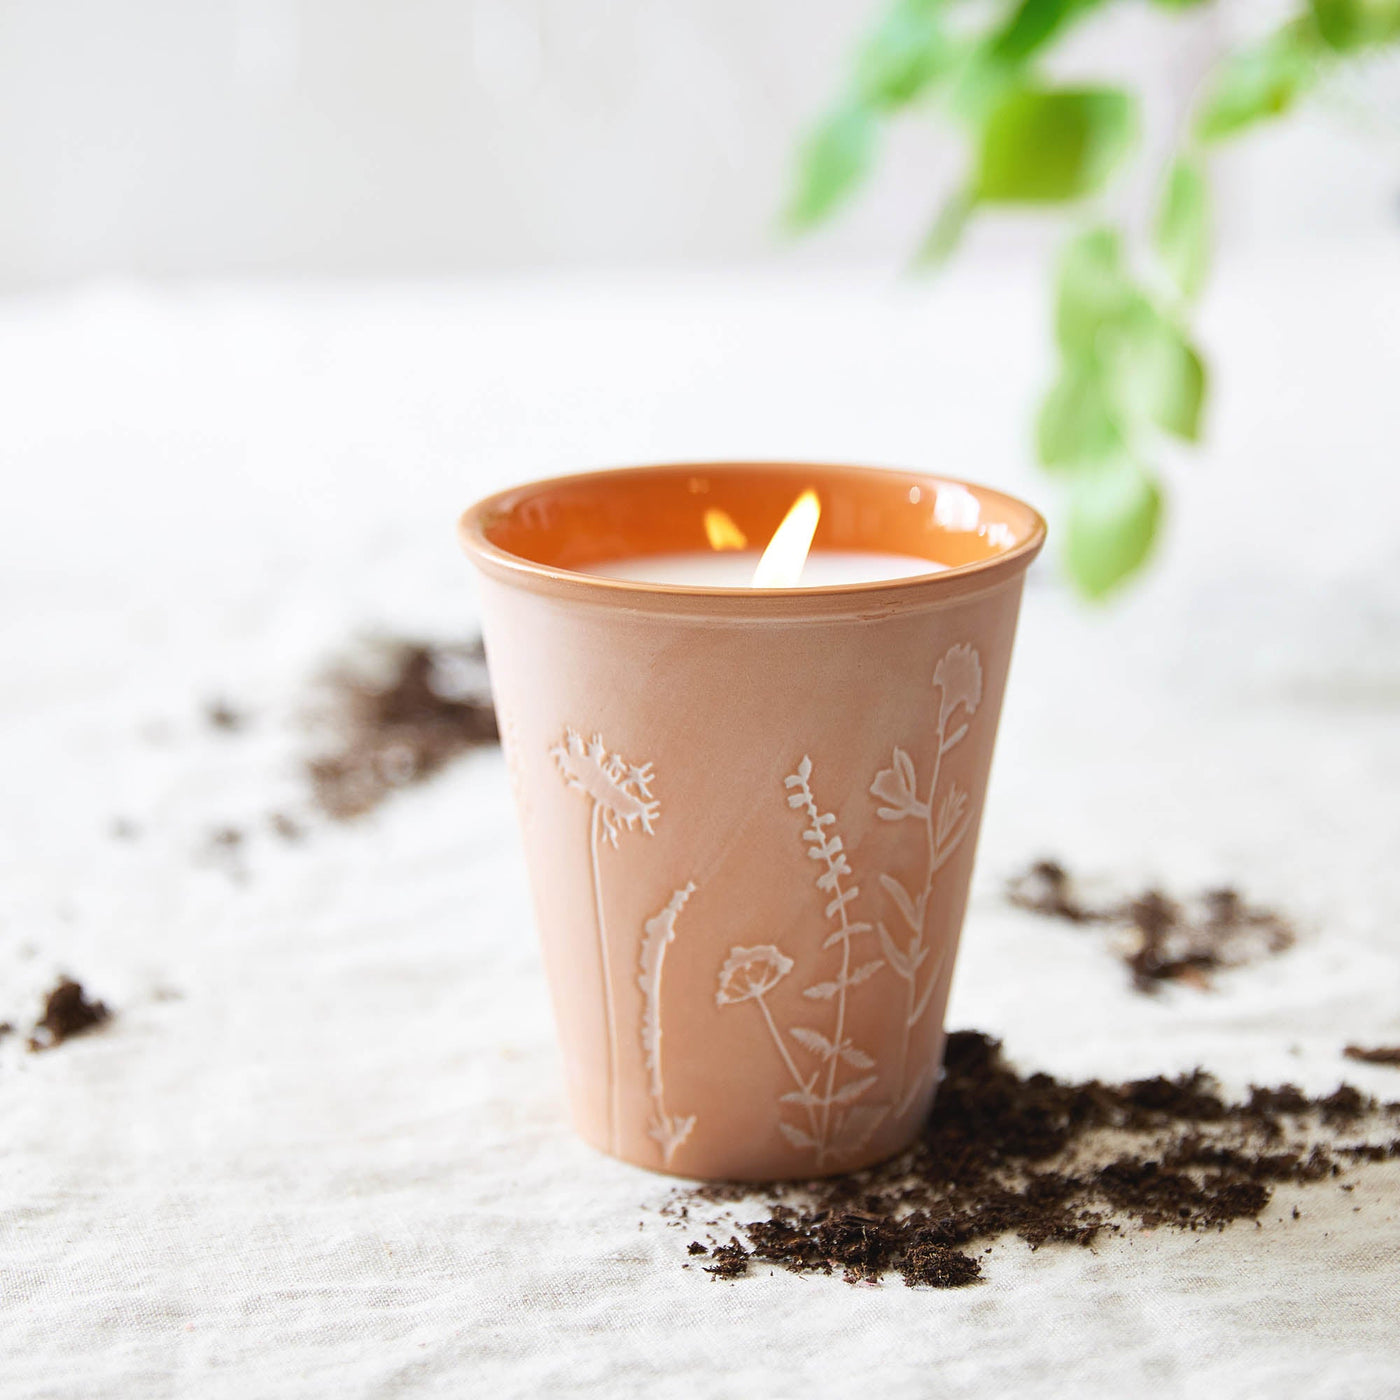 Black Currant + Bay Garden Pot Candle